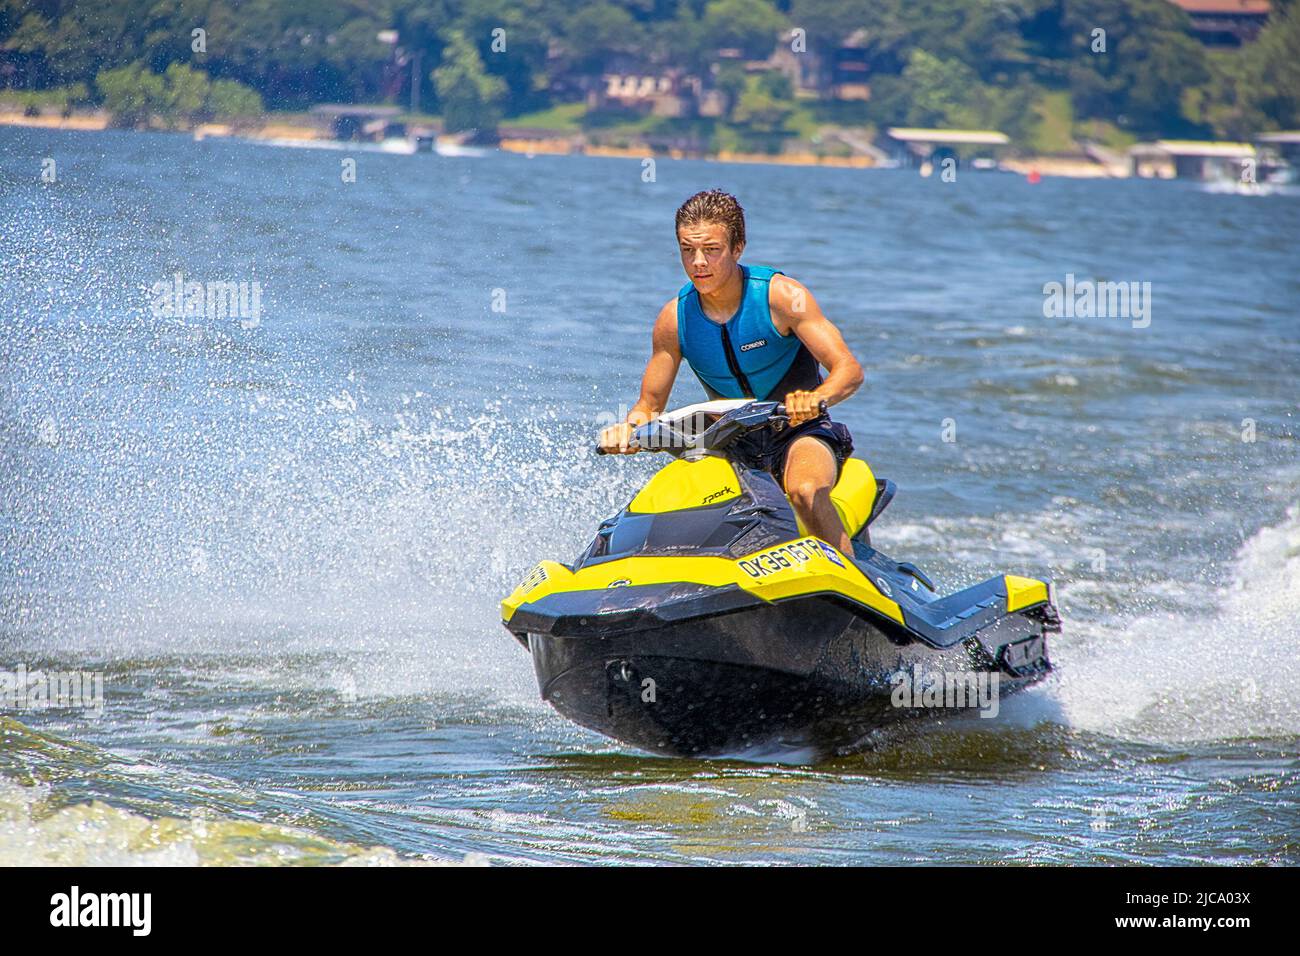 2021 - 06 -20 Grand Lake, OK USA - attraktiver junger Mann auf Wellenläufer - PWC - Jet-Ski hockte und lehnte sich nach vorne, als er sich auf ein Boot wat Stockfoto